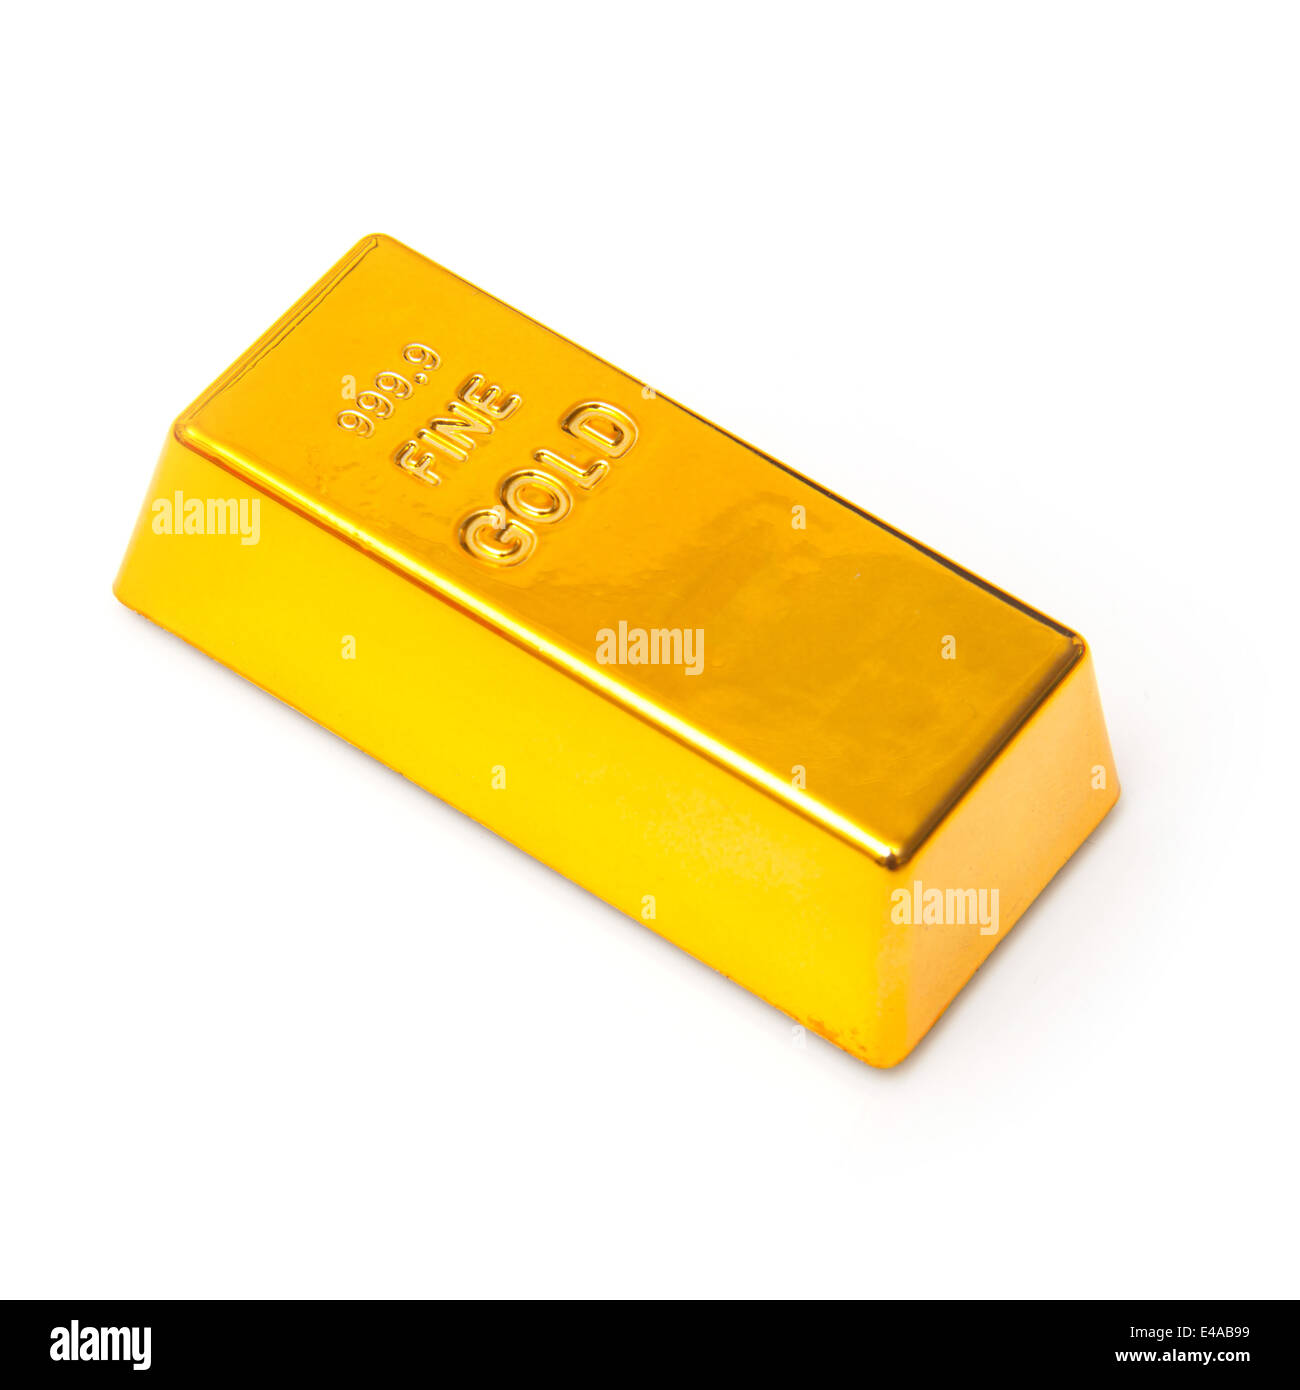 200 gramos de oro en lingotes o barras aislados en un estudio de fondo blanco. Foto de stock